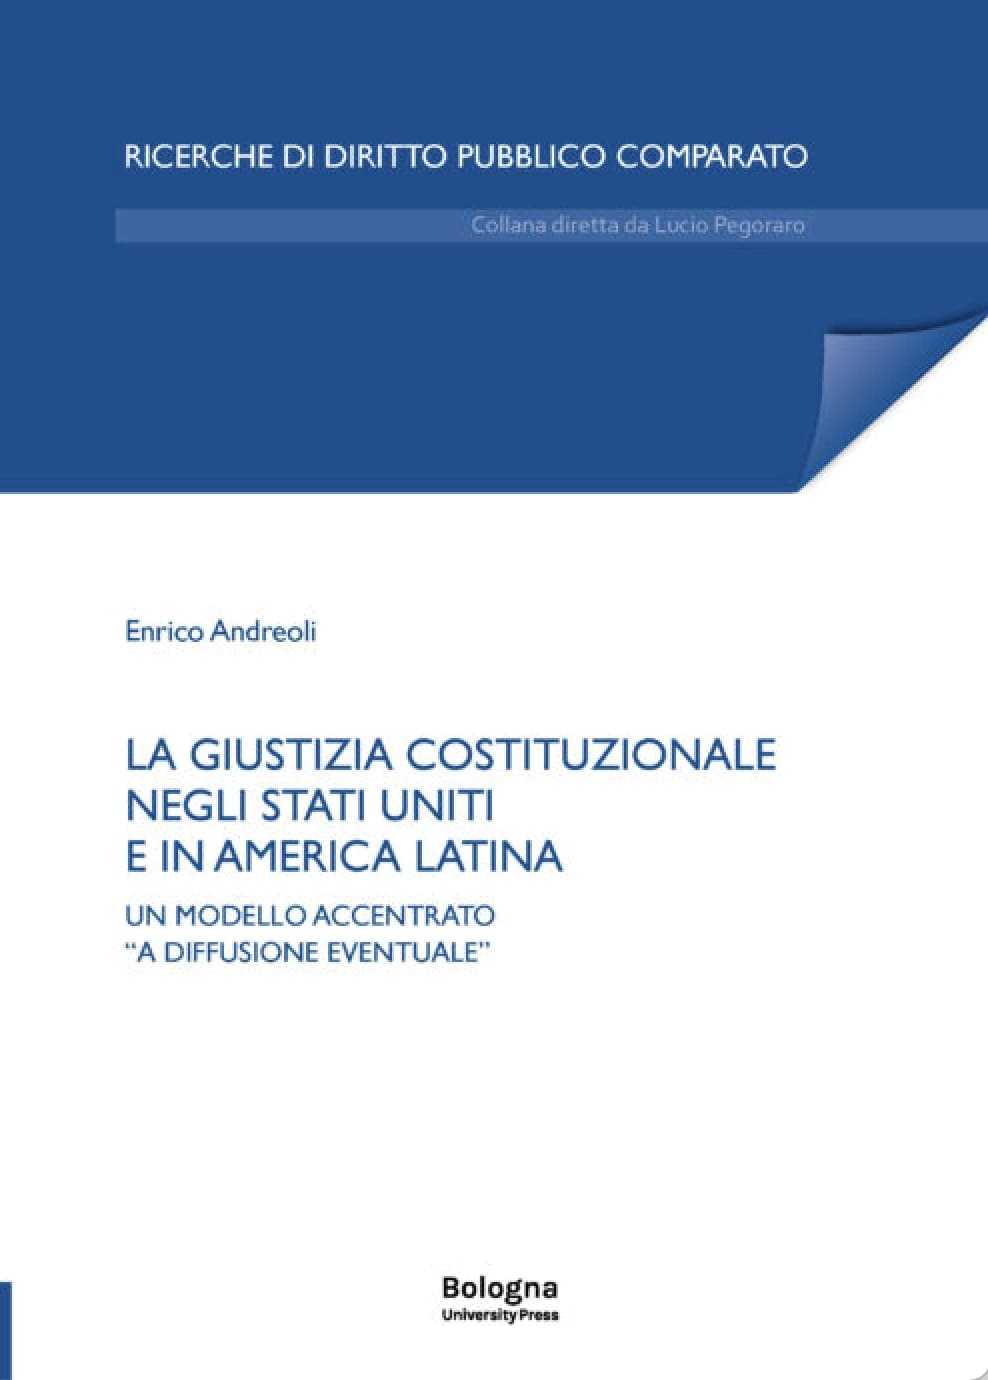 LA GIUSTIZIA COSTITUZIONALE NEGLI STATI UNITI E IN AMERICA LATINA - Bologna University Press